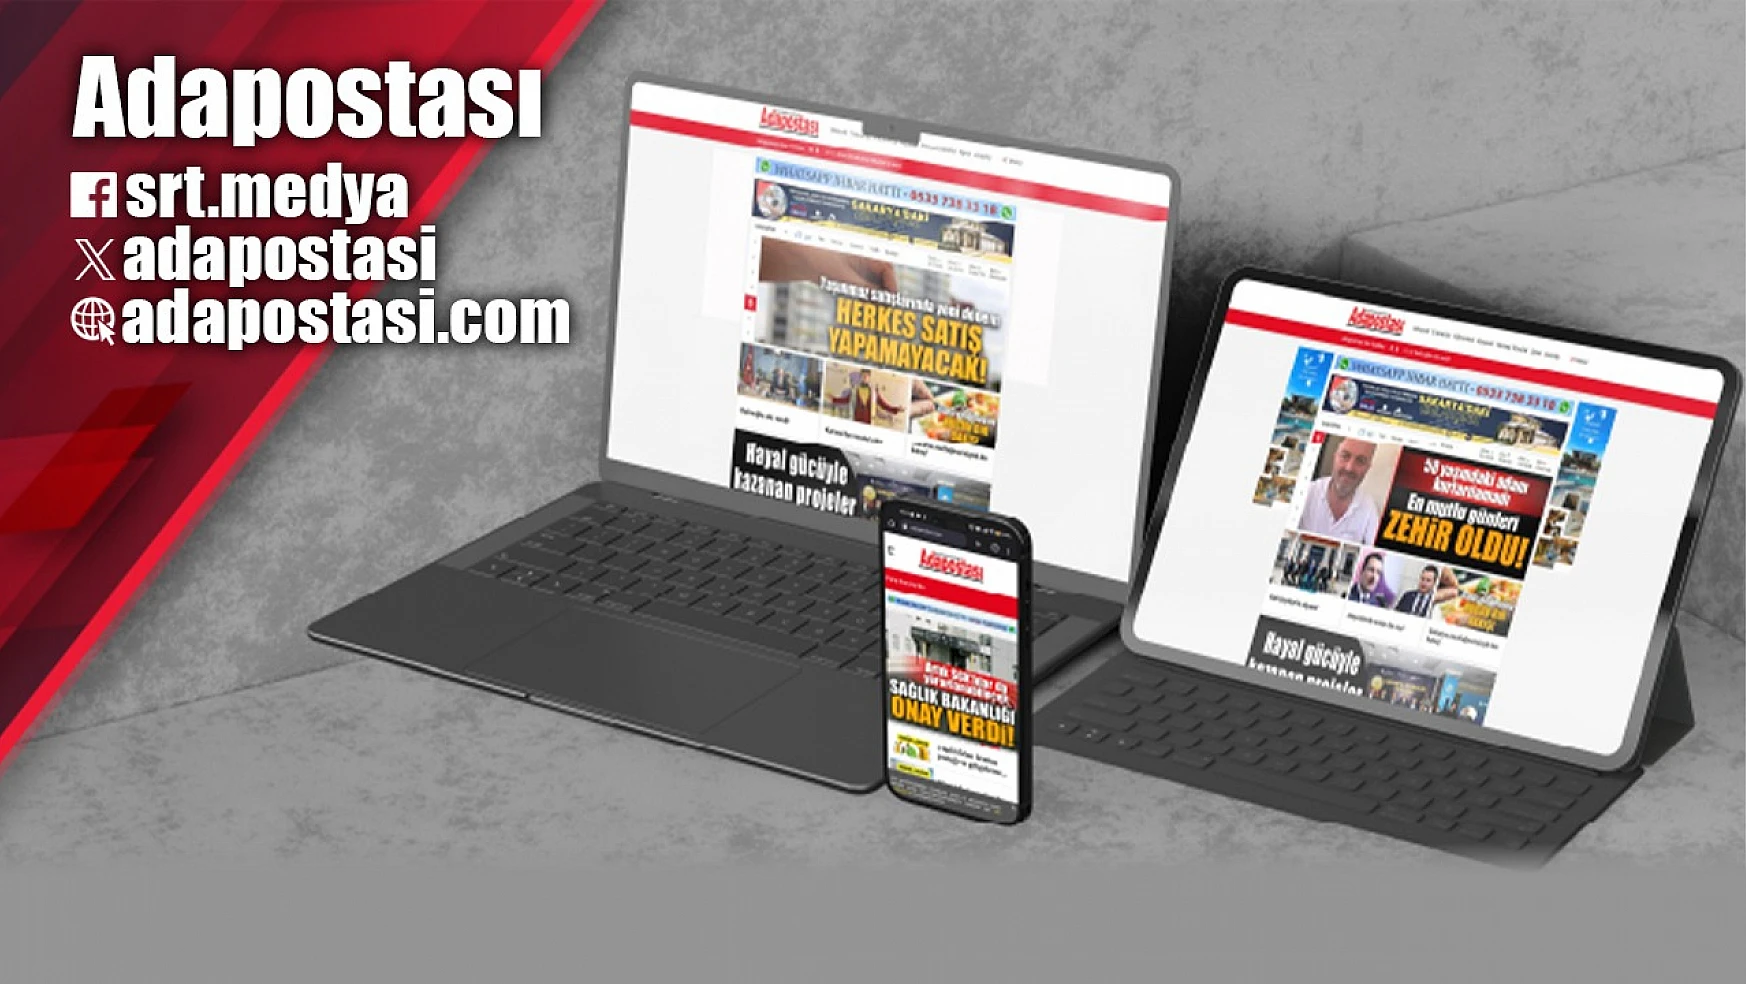 Adapostasi.com Sakarya ve Türkiye'nin tarafsız haber sitesi